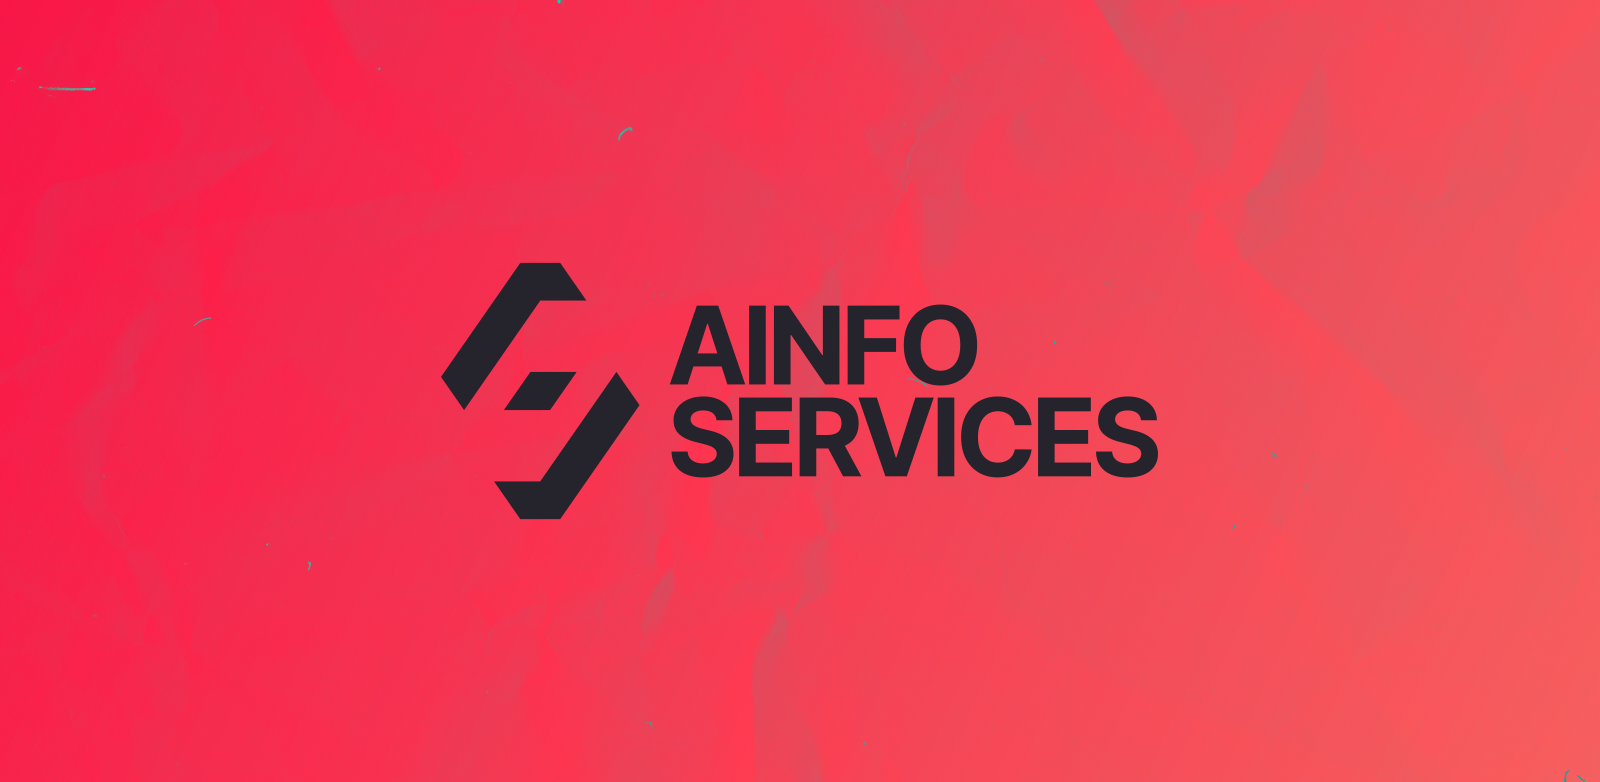 Création du logo Ainfo Services